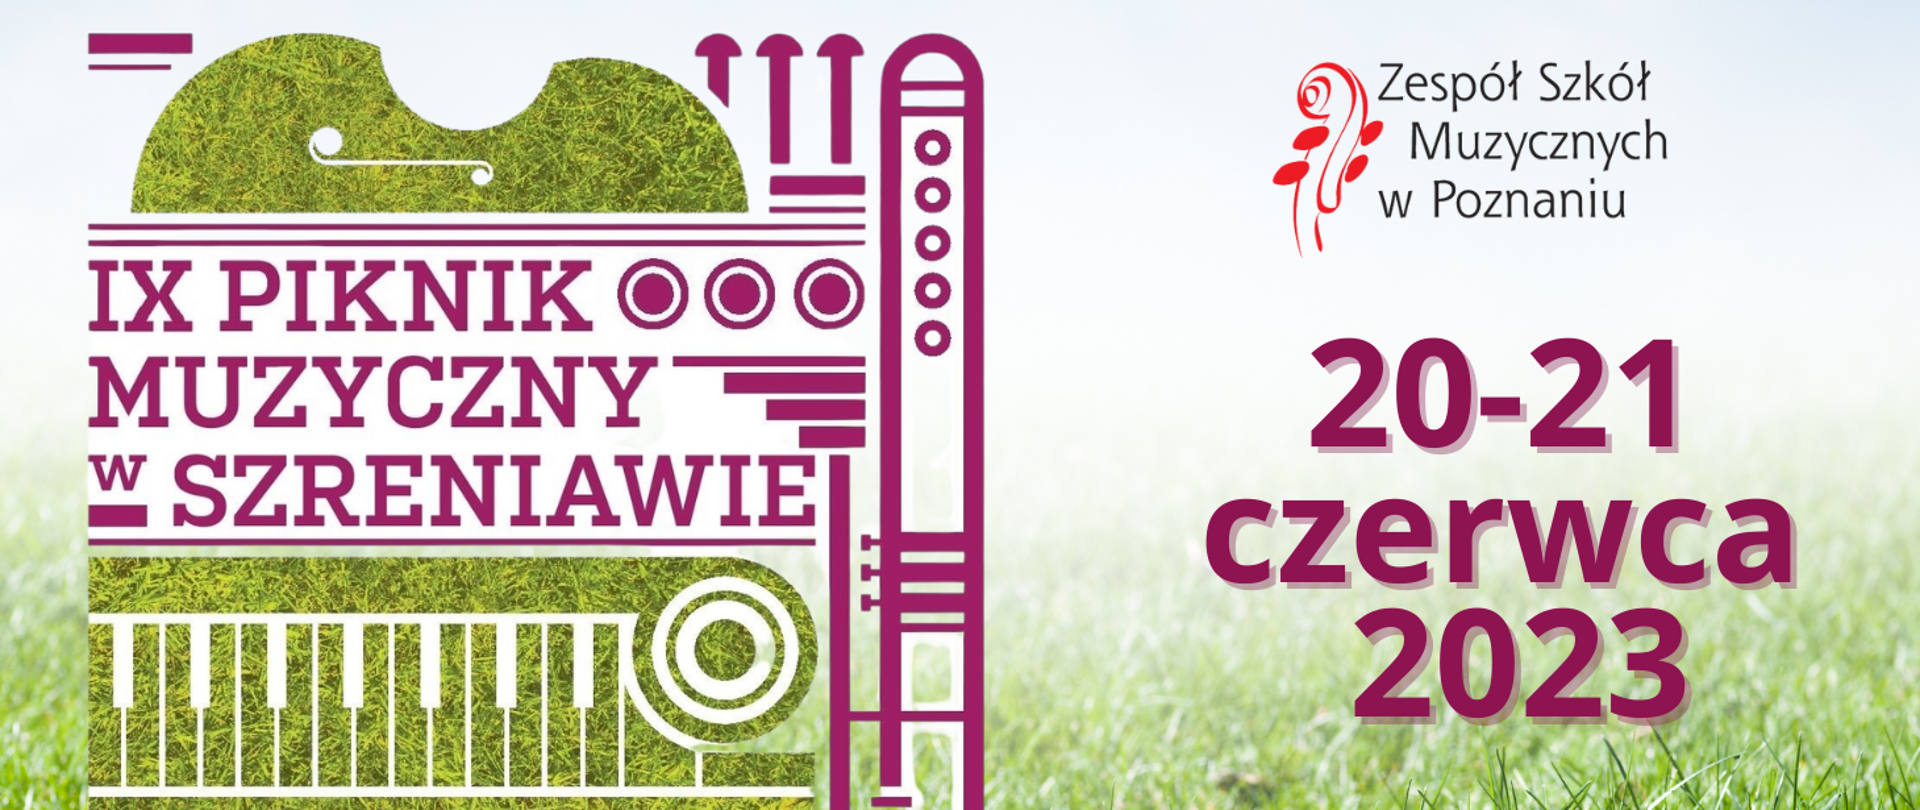 Grafika na tle zielonej trawie z logo Zespołu Szkół Muzycznych w Poznaniu z tekstem: IX Piknik Muzyczny w Szreniawie 20-21 czerwca 2023